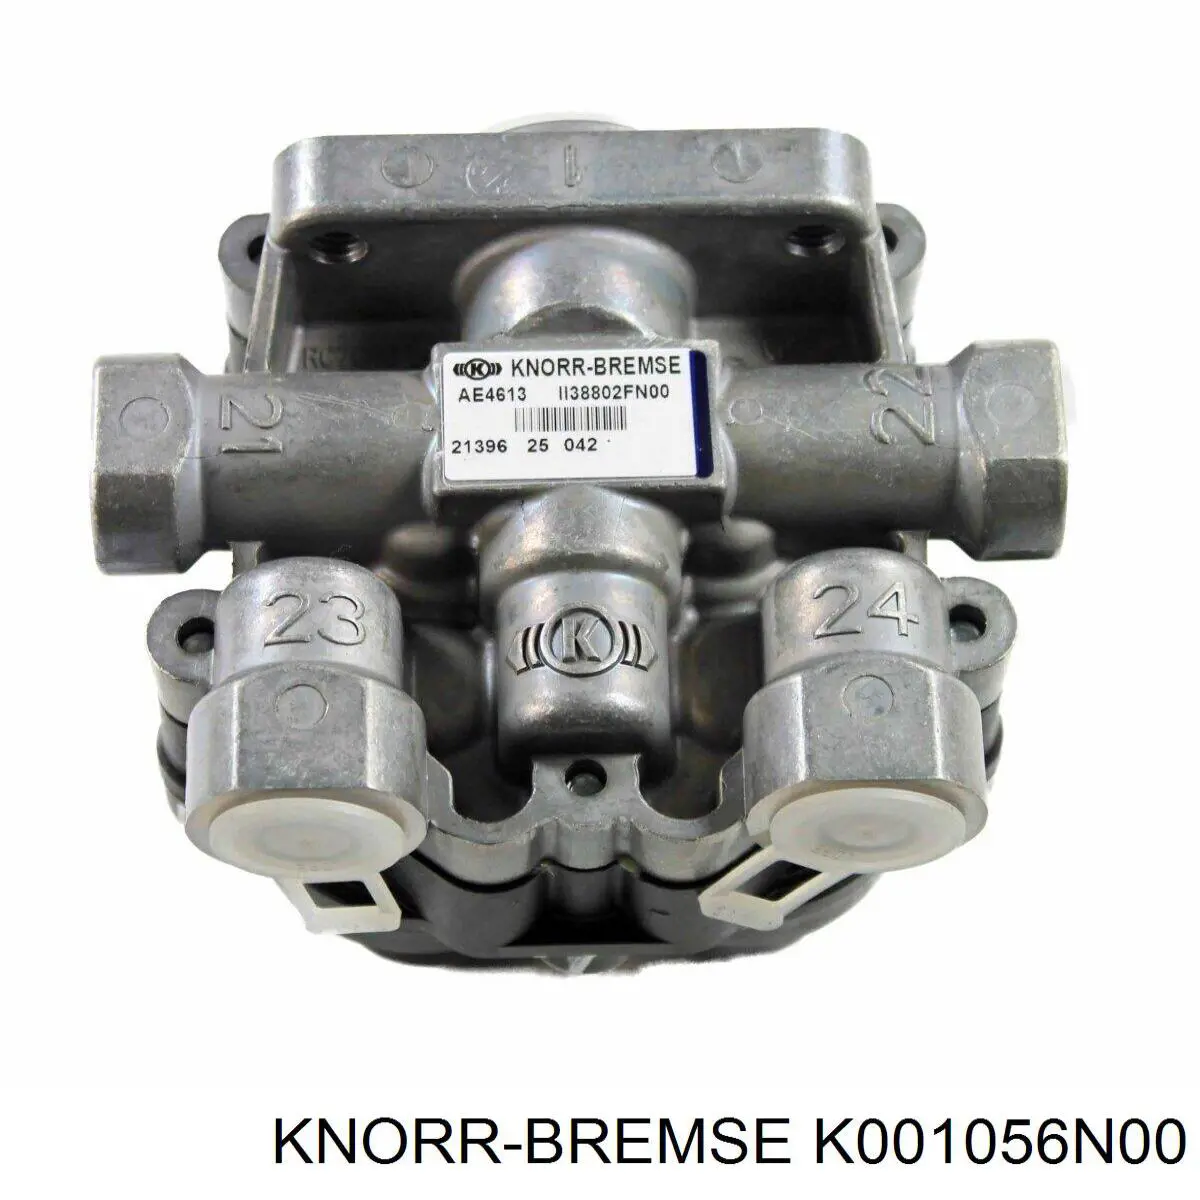 Deshumificador De Sistema Neumatico K001056N00 Knorr-bremse